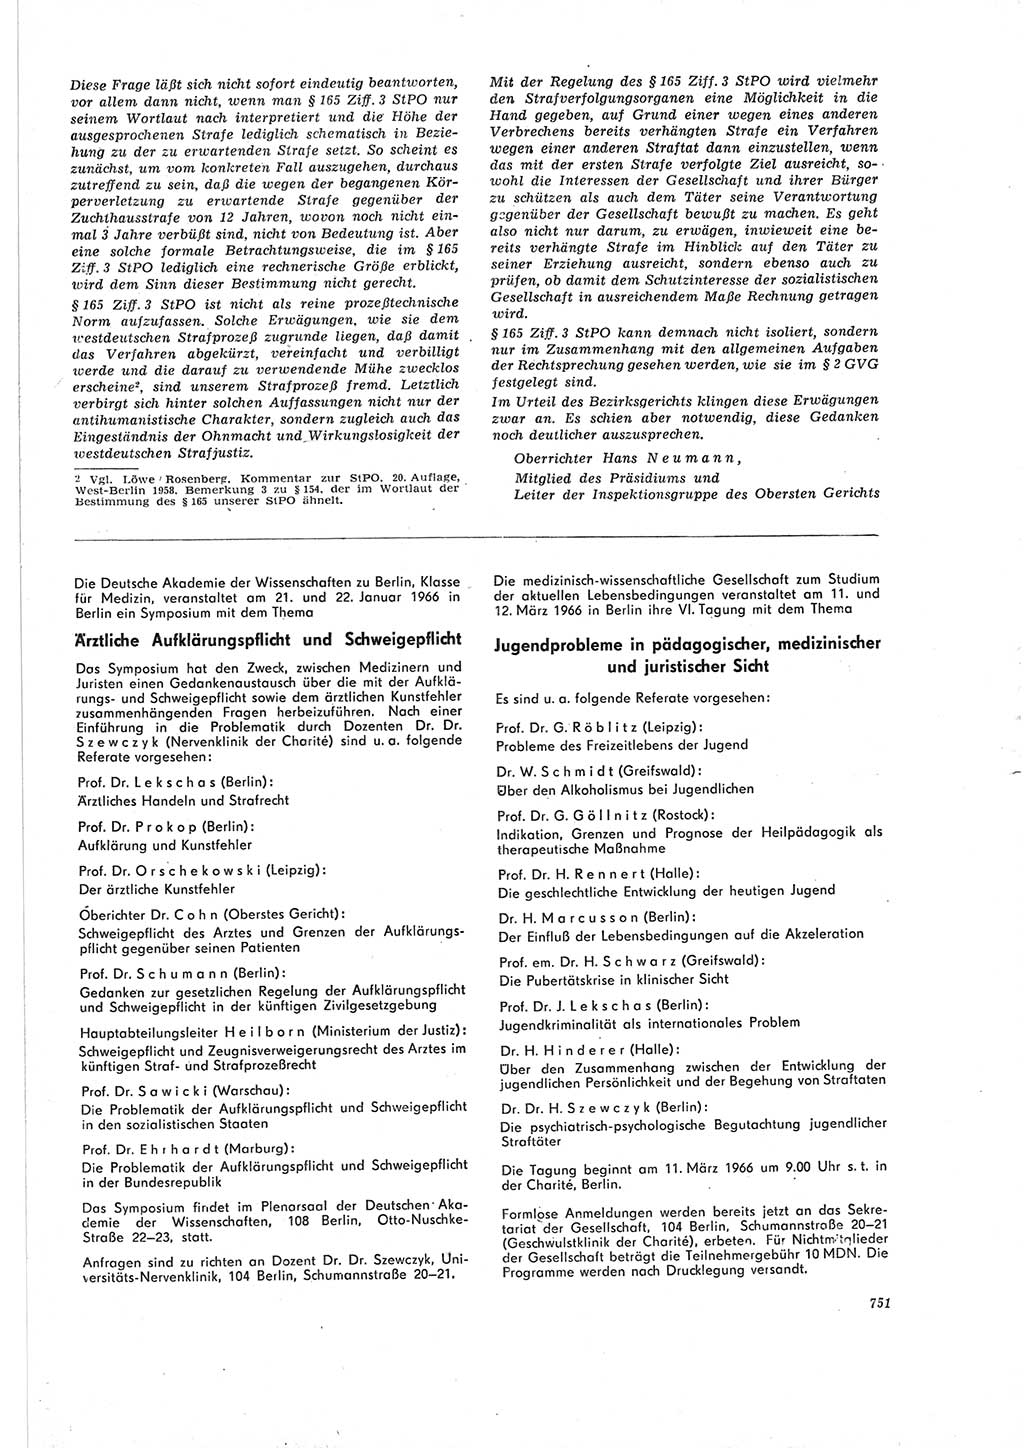 Neue Justiz (NJ), Zeitschrift für Recht und Rechtswissenschaft [Deutsche Demokratische Republik (DDR)], 19. Jahrgang 1965, Seite 751 (NJ DDR 1965, S. 751)